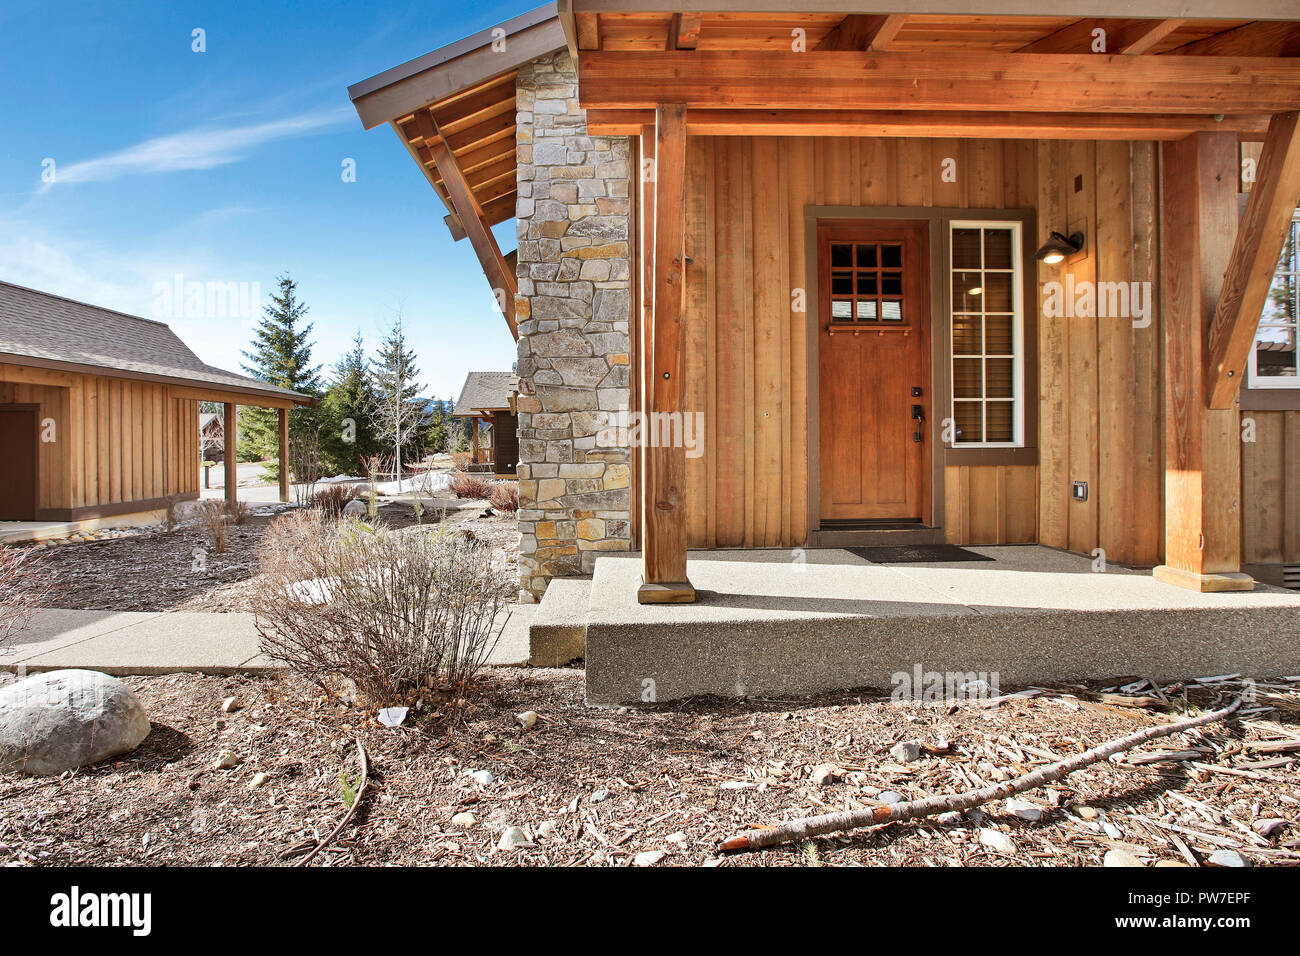 Holz außen mit überdachte Veranda im Wohngebiet. Northwest, USA Stockfoto